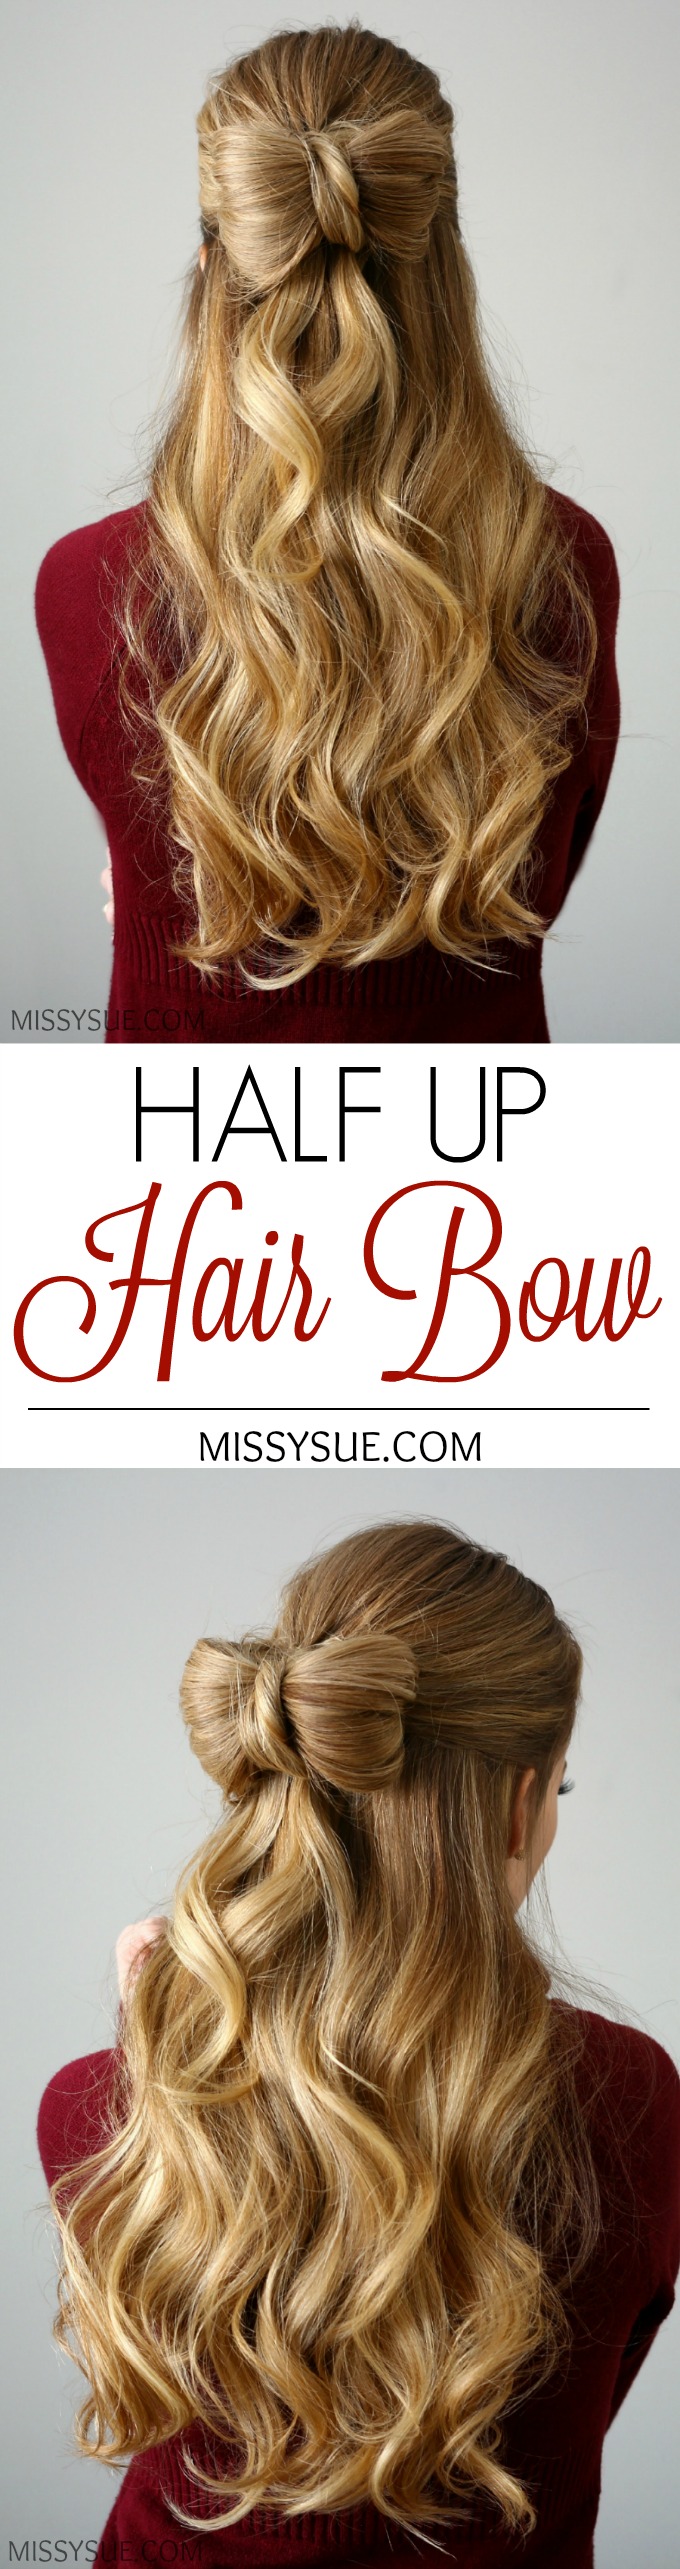 Half Up Hair Bow